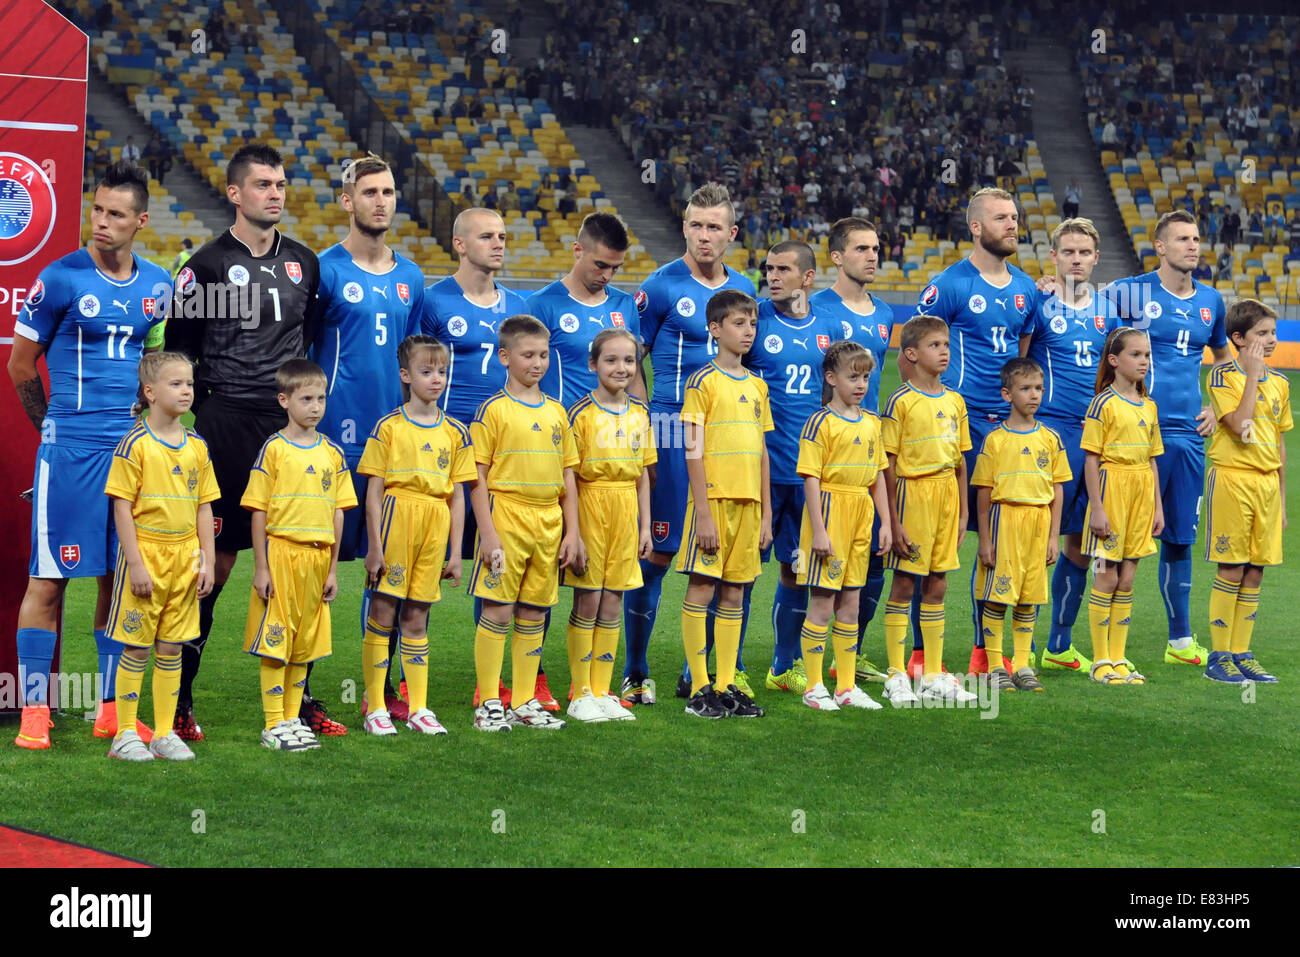 Squadra Nazionale Di Calcio Slovacca Immagini e Fotos Stock - Alamy